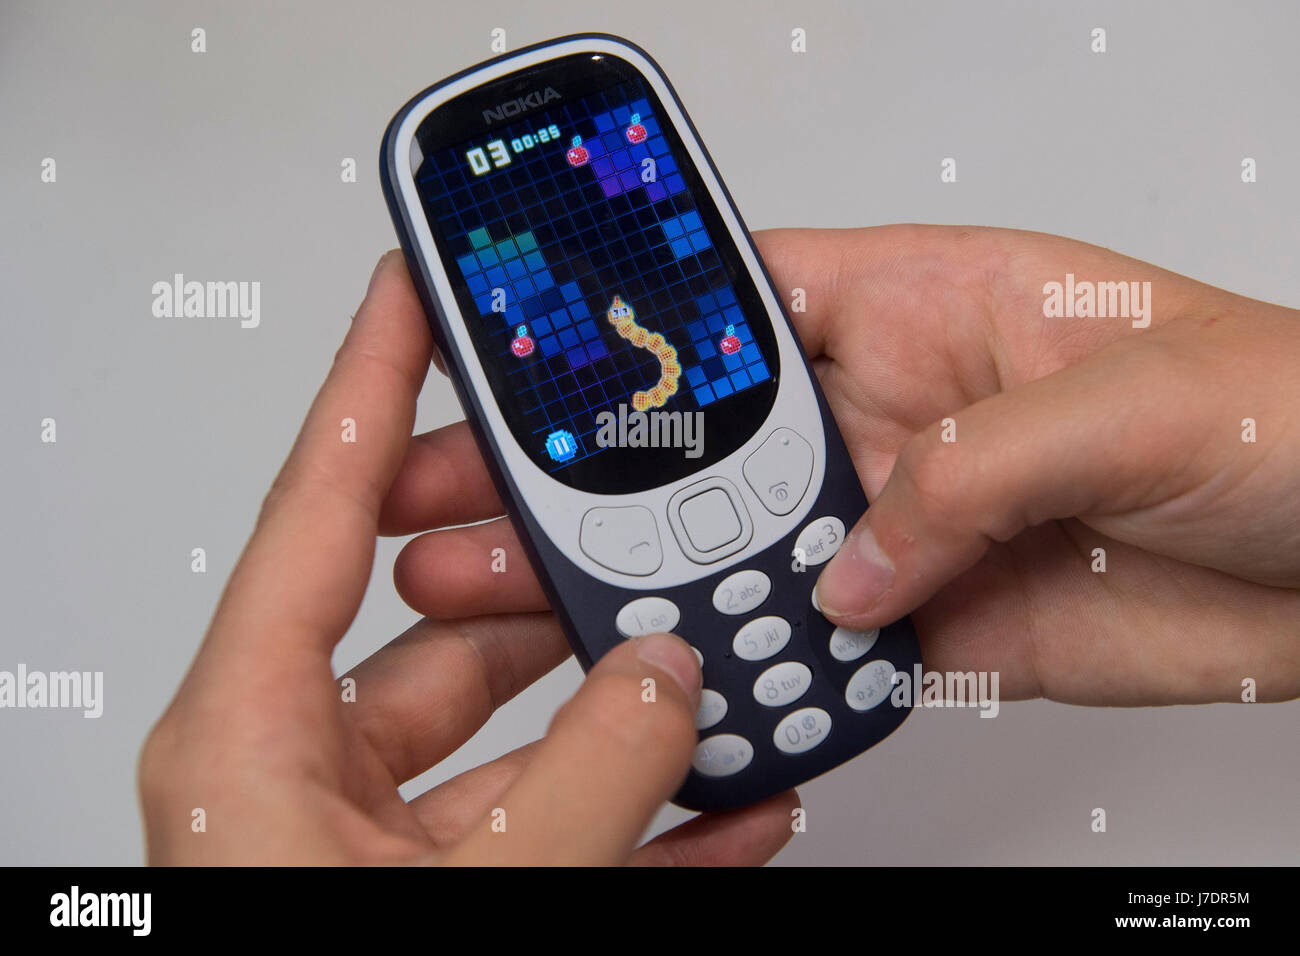 Una persona che interpreta il classico gioco per cellulare Snake come il nuovo Nokia 3310 telefono cellulare va in vendita presso la Carphone Warehouse su Oxford Street, Londra. Foto Stock